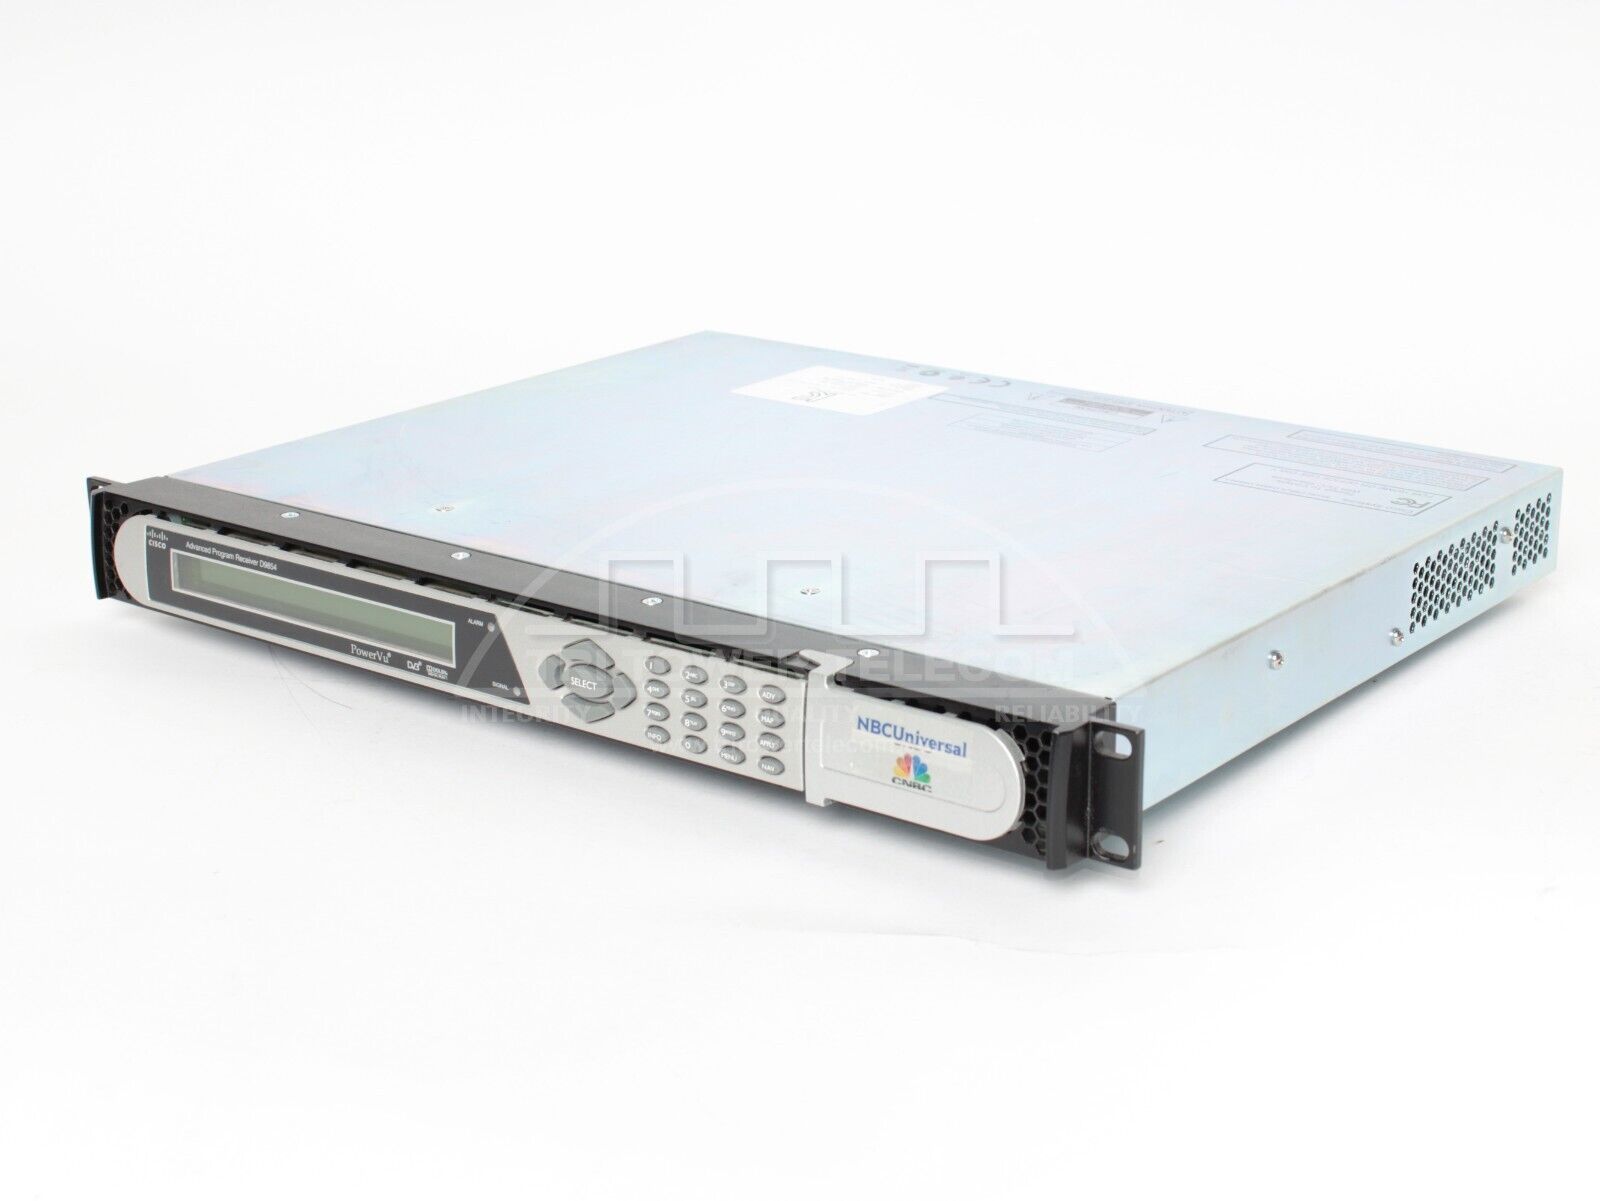 401943801060001, CISCO D9854 Advanced Program Receiver, 4x, DVB-S/S2, ASI, SD MP